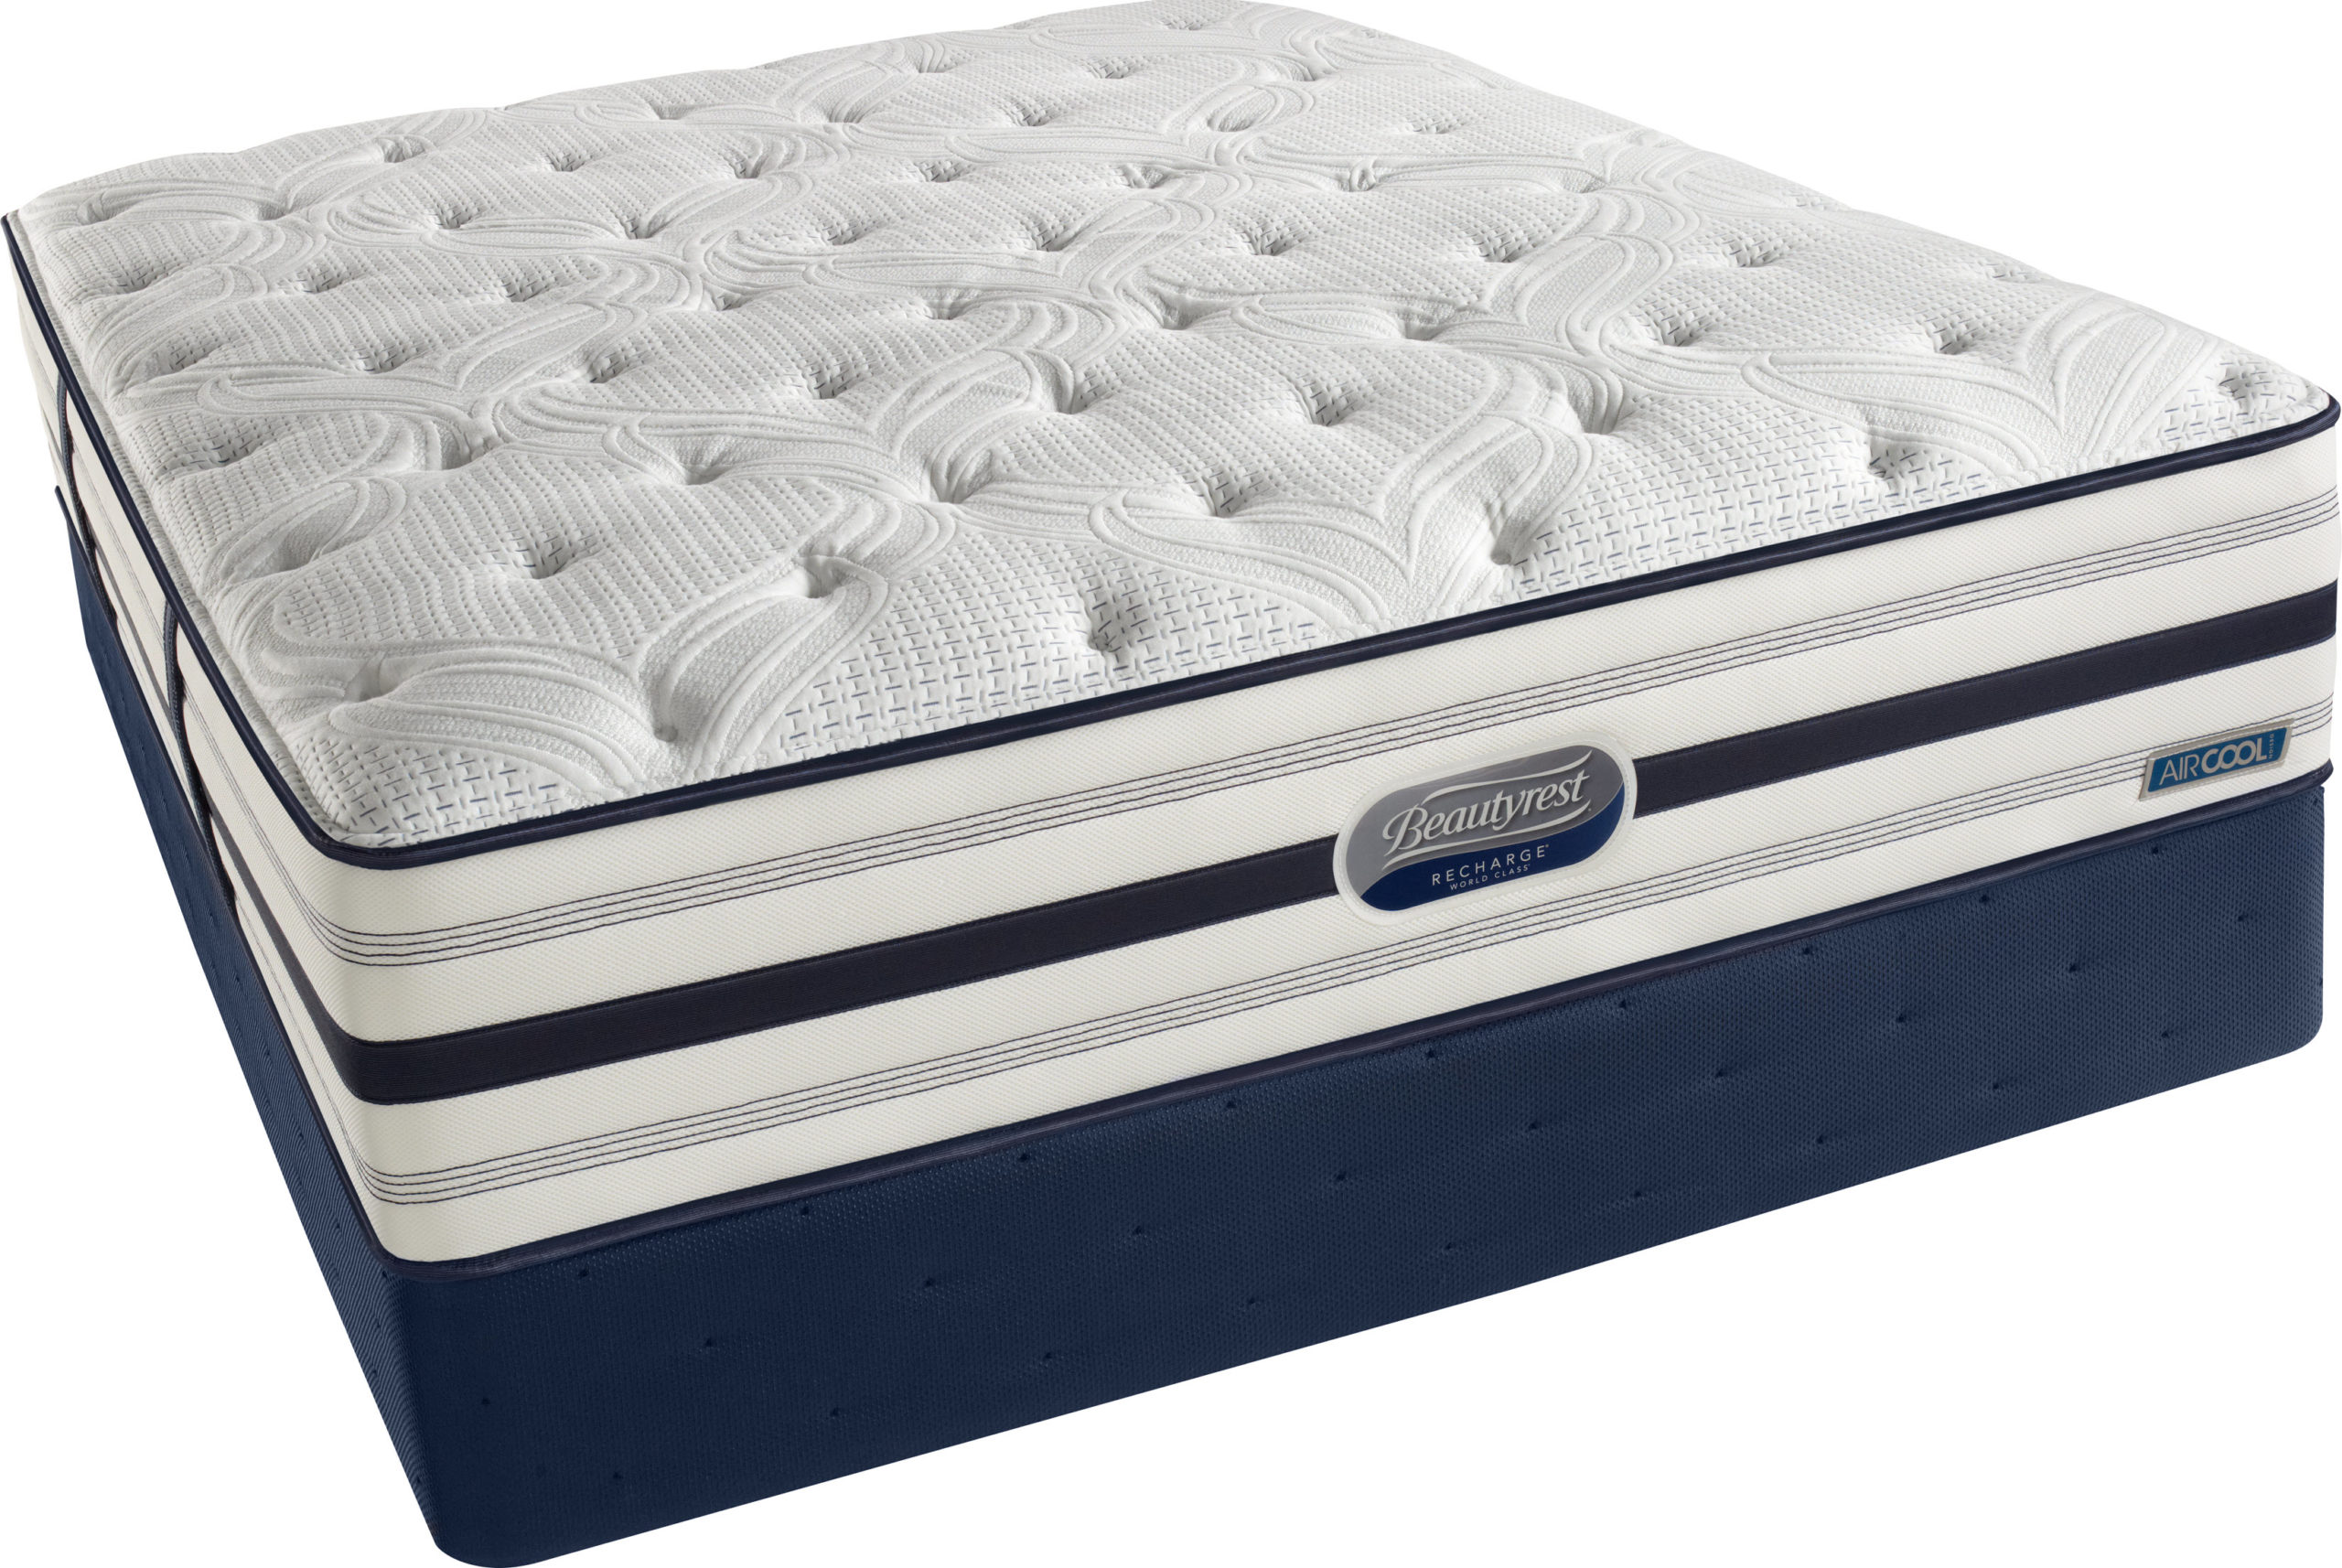 mattress firm or plush mattress